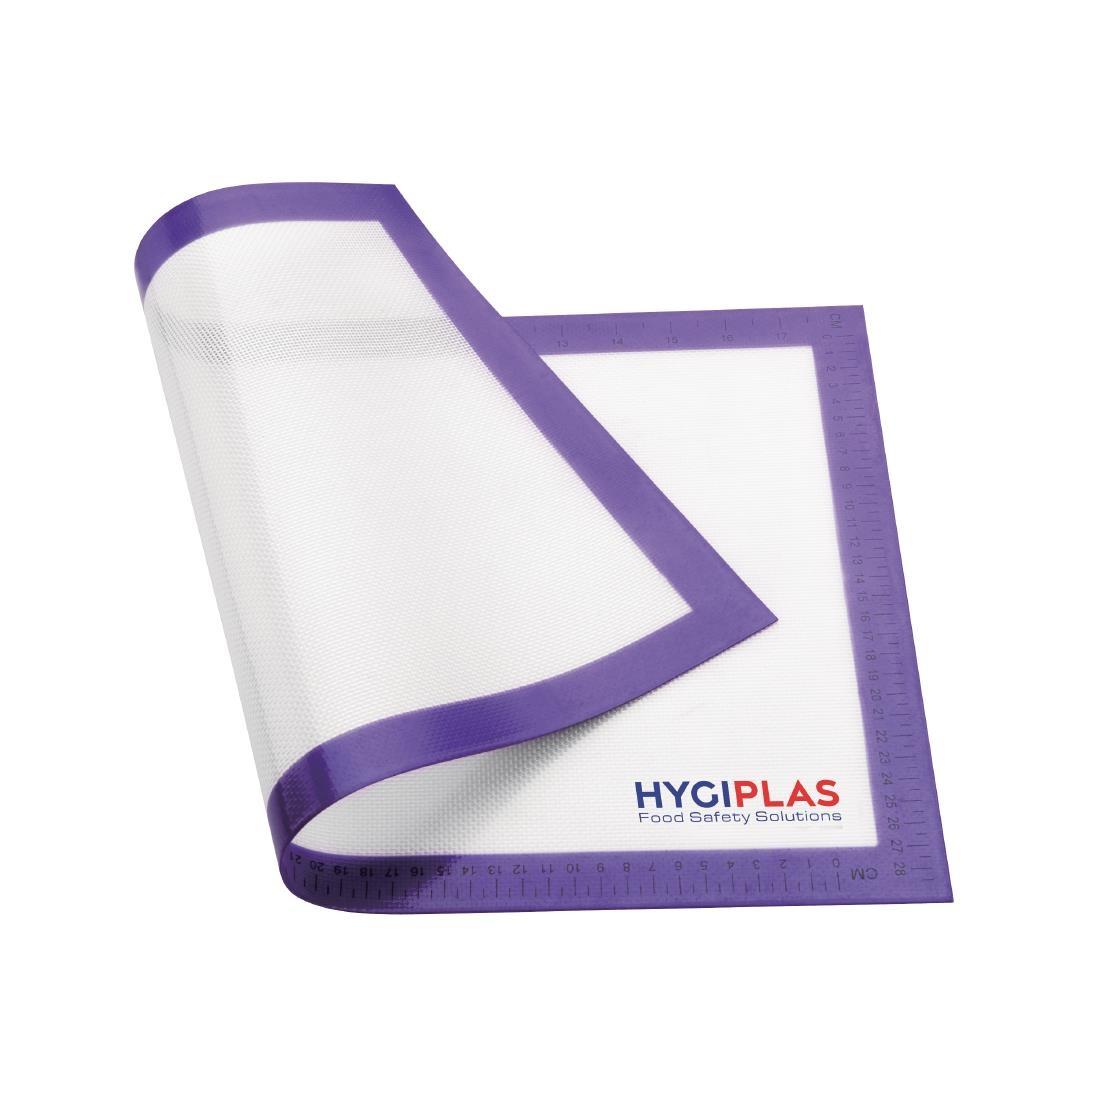 Hygiplas Allergens Non-Stick Baking Mat 520x315mm (20.5x12.4") - FB608  - 5